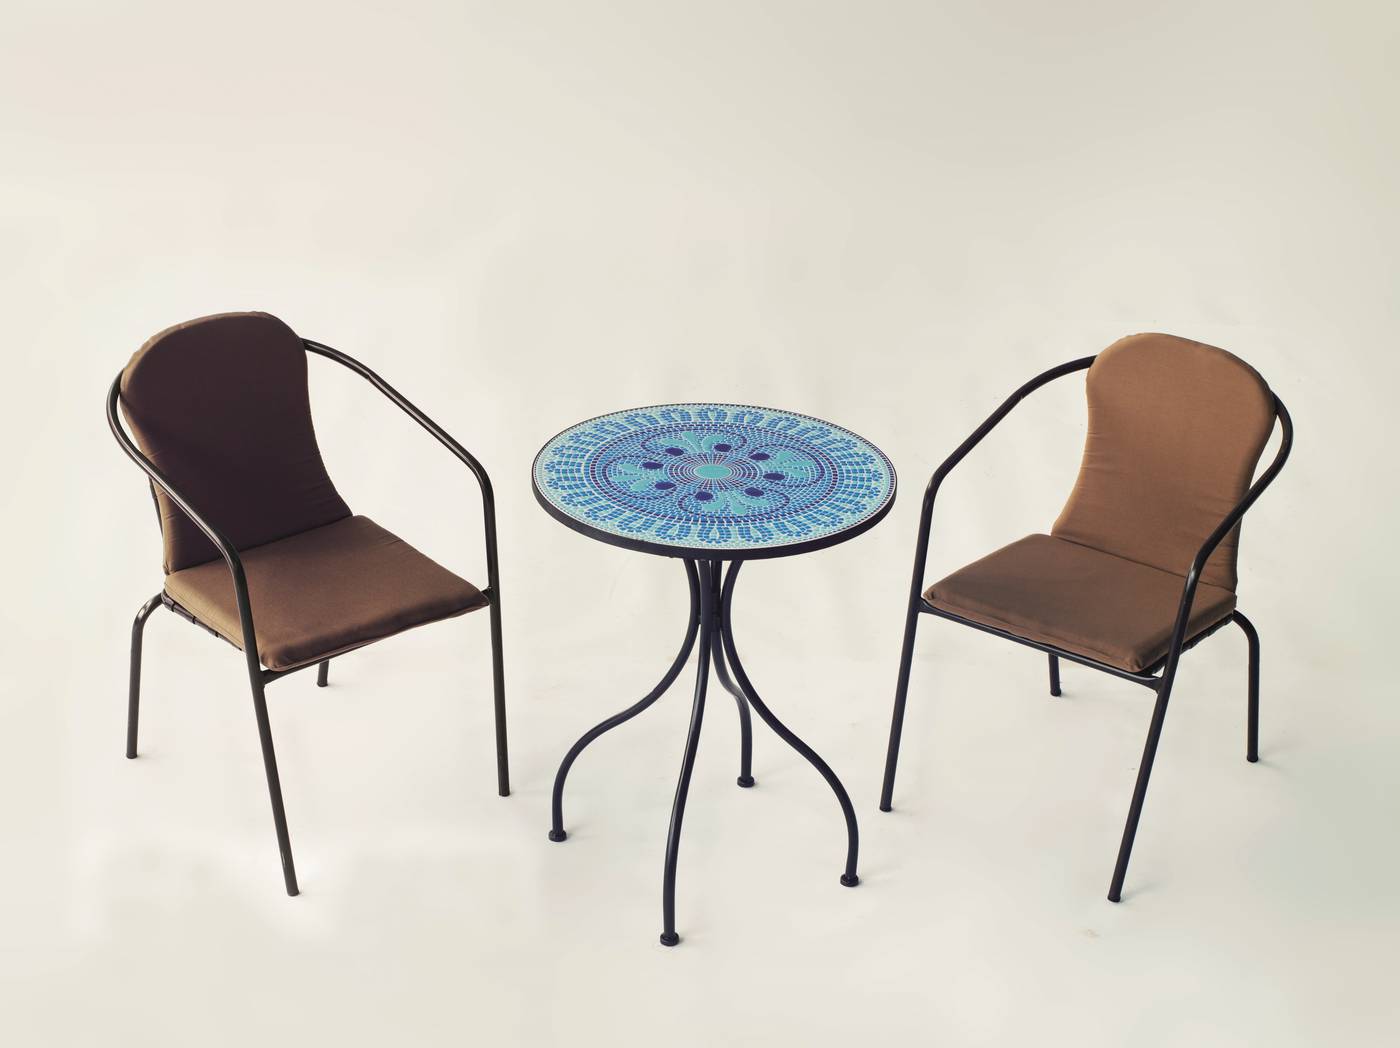 Conjunto Mosaico Berna-Marsel - Mesa de forja color antracita, con tablero mosaico de 60 cm + 2 sillones apilables de aluminio con cojín.